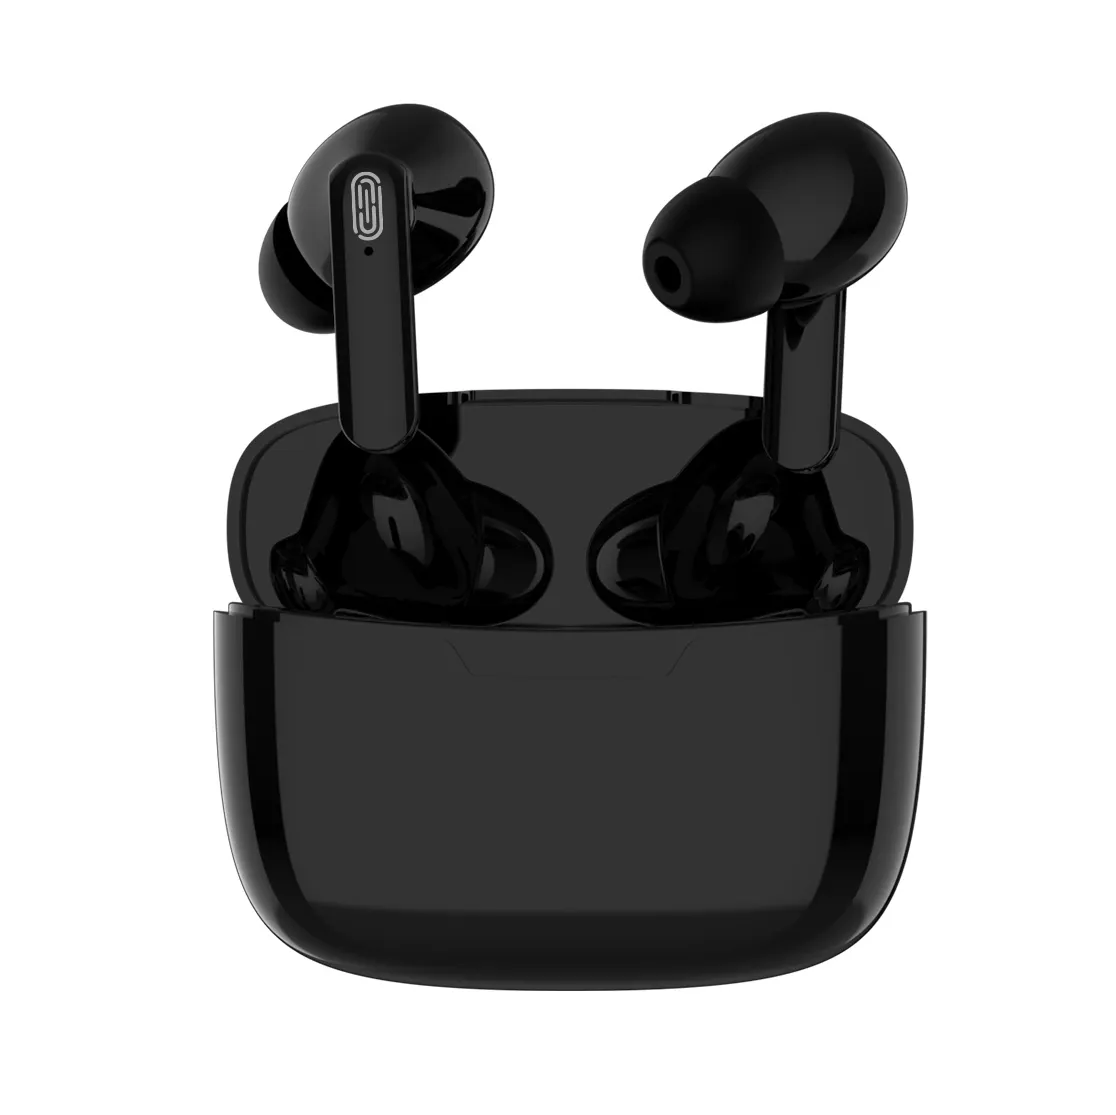 Earphone gaming Y113, harga murah Headphone baru earbud nirkabel Pro 5 Pro 6 Pro 2 TWS headset sentuh nirkabel